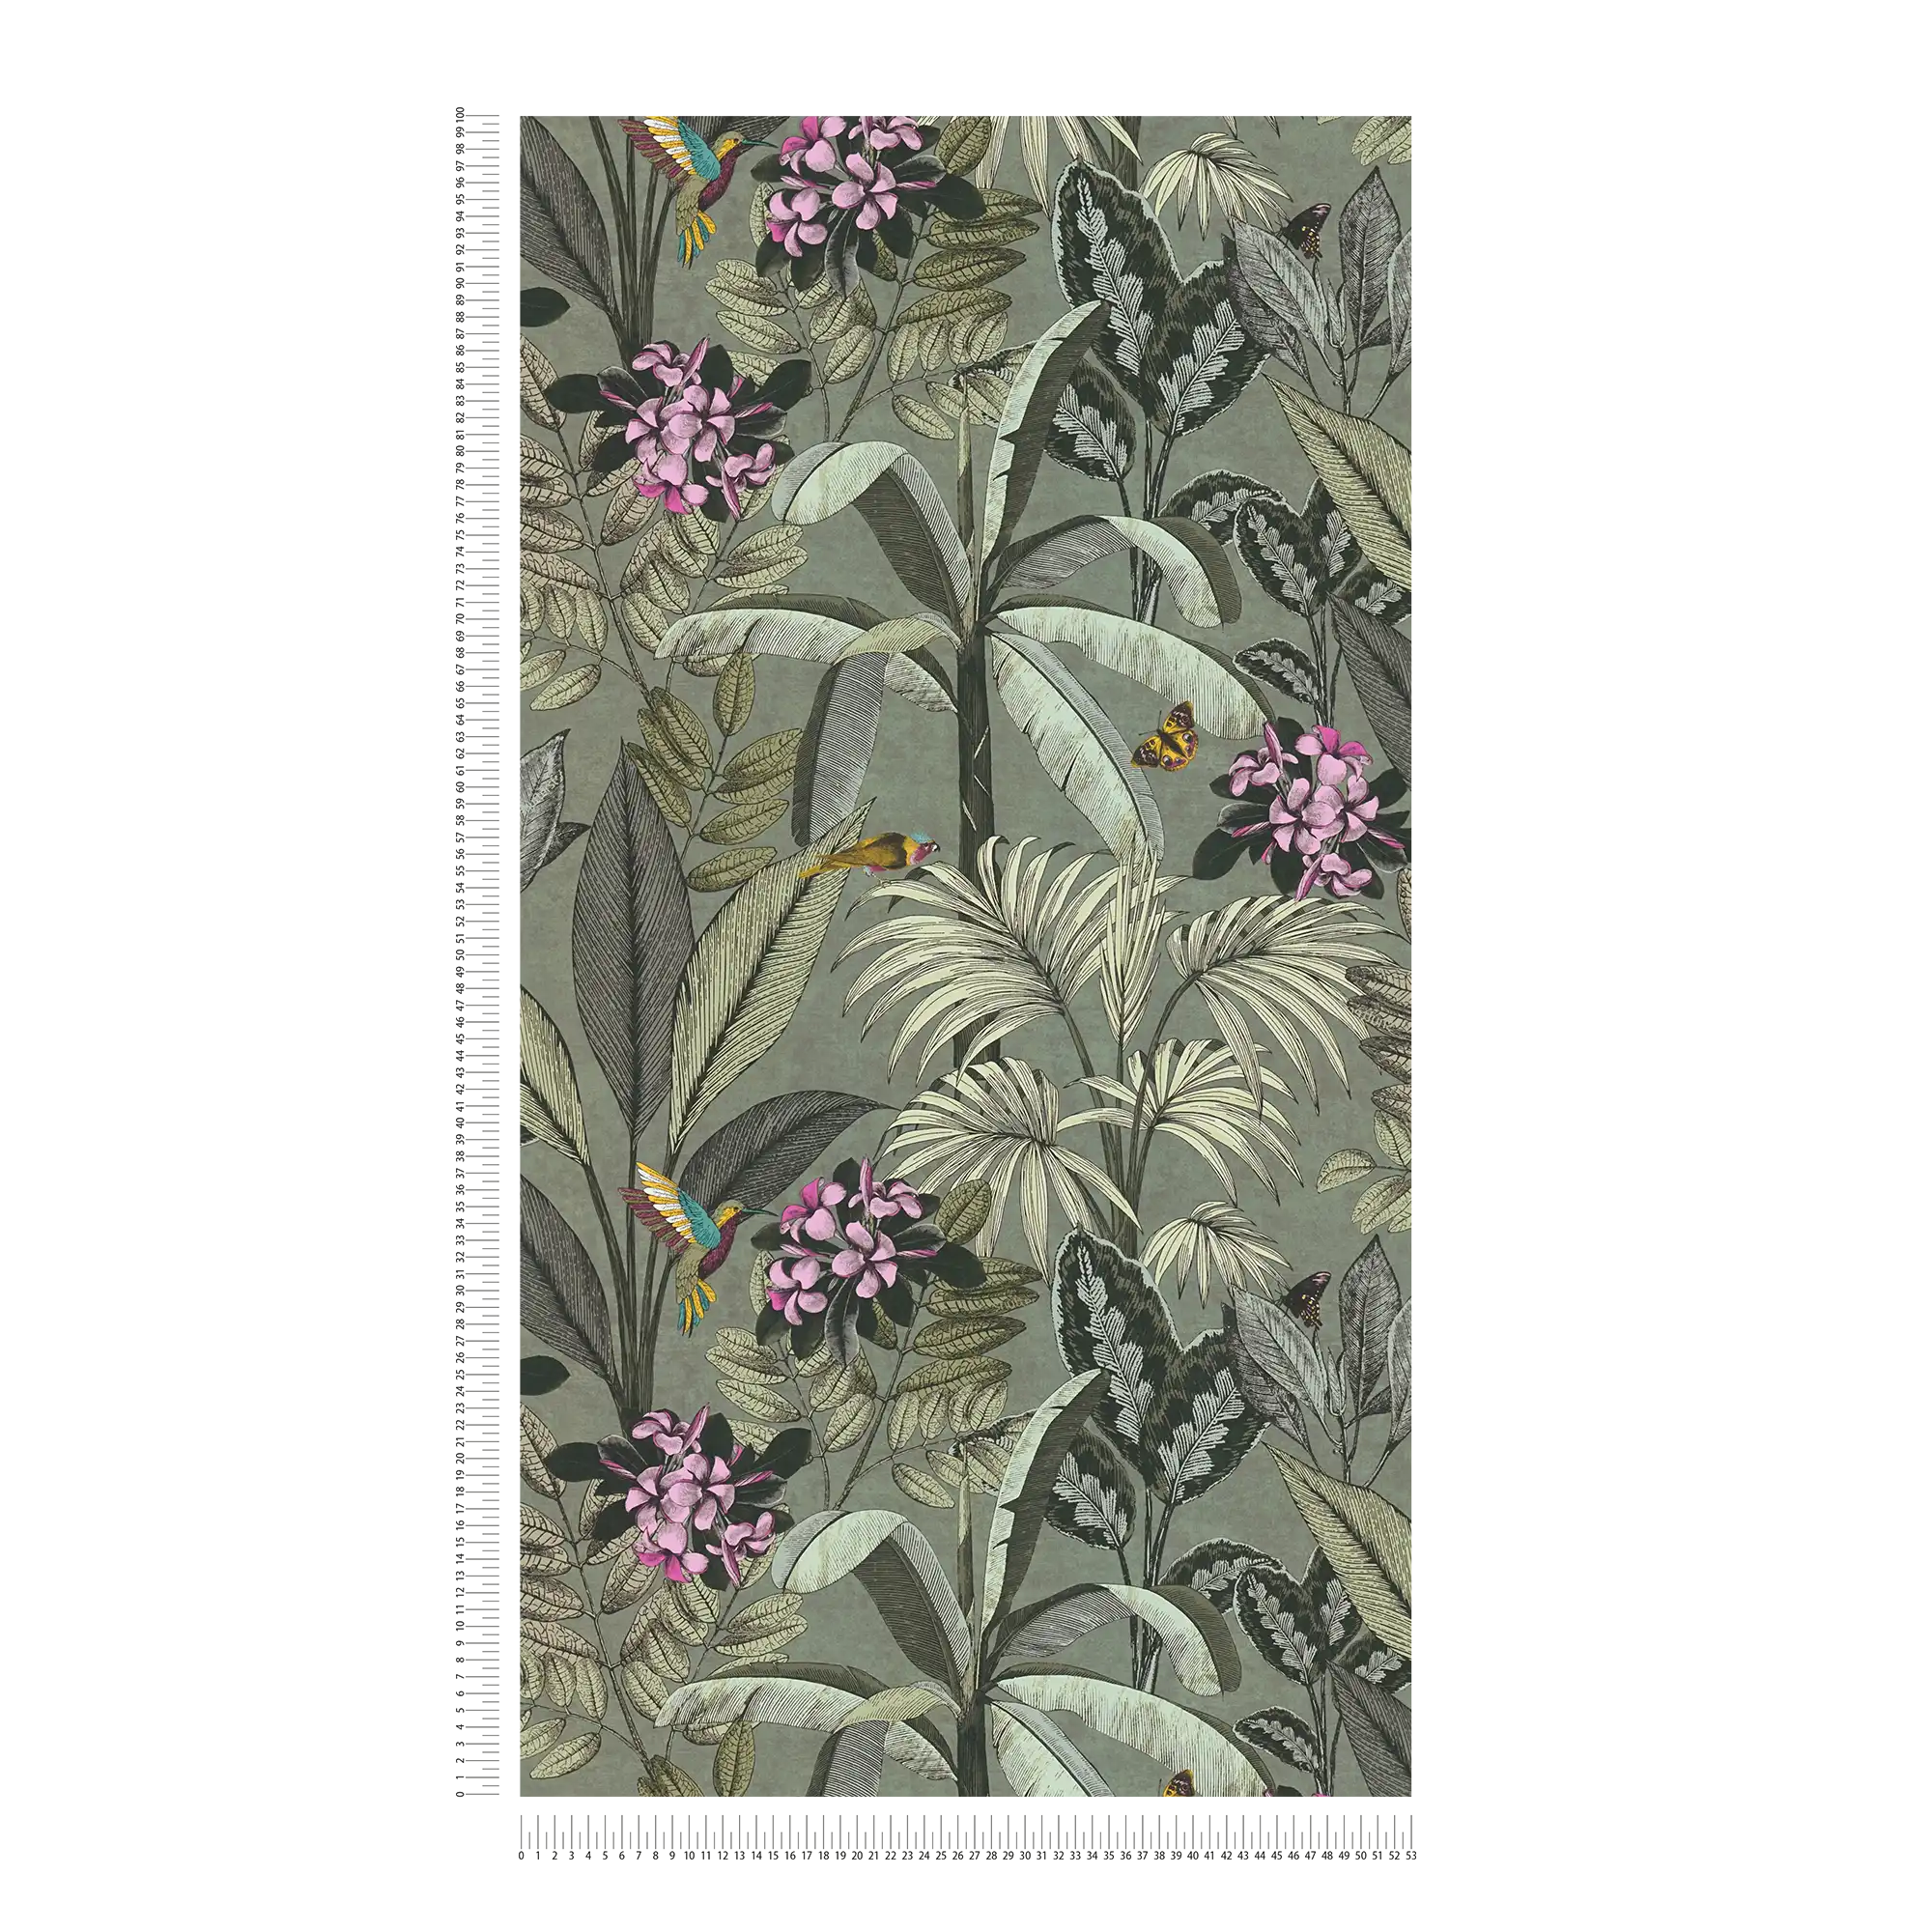             Dschungel Tapete Blätter, Blumen und Vögel – Grau, Grün
        